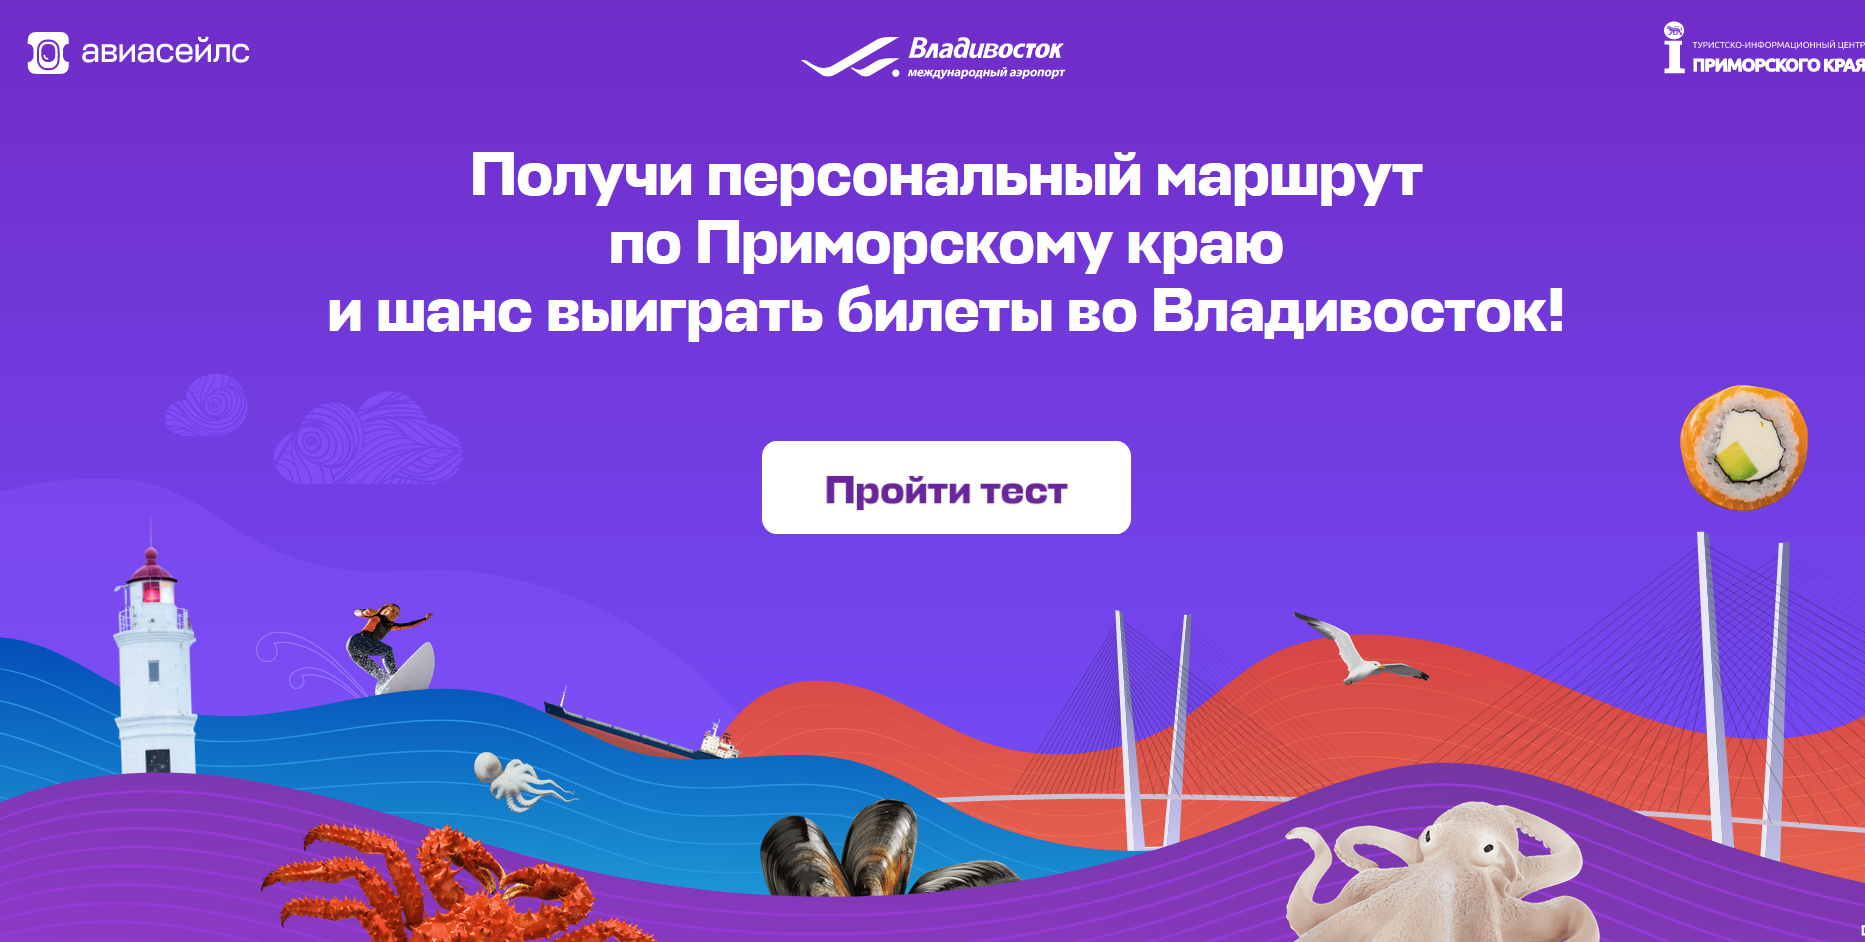 Международный аэропорт Владивосток разыгрывает путешествие совместно с Авиасейлс 